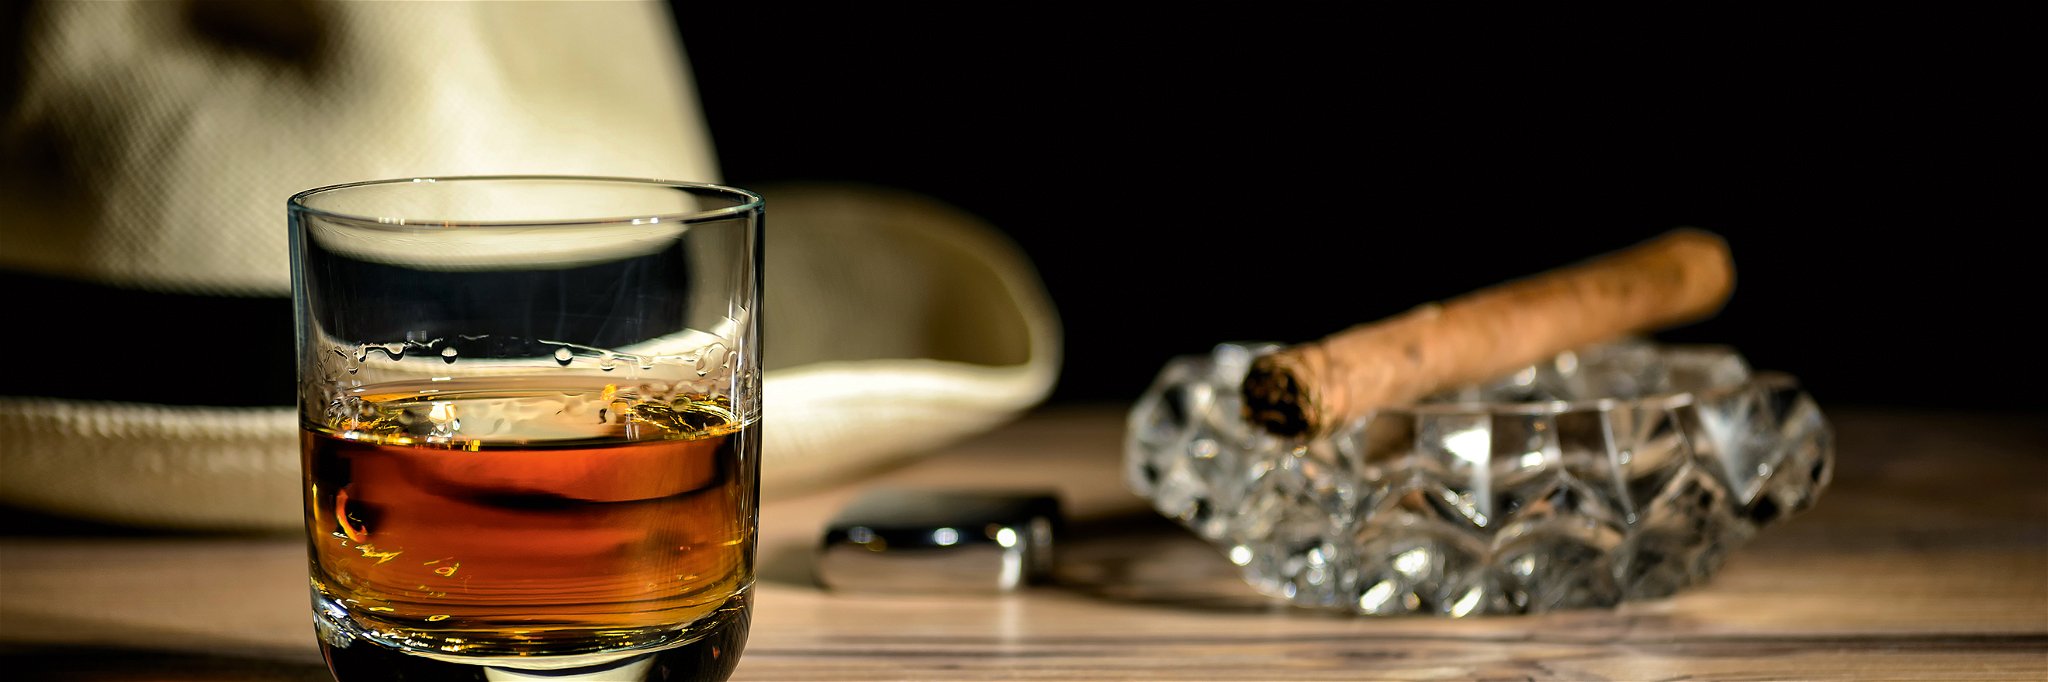 Rum schmeckt nicht nur zur Zigarre. Unter Experten ist längst klar: Rum wird ganz allgemein unterschätzt.